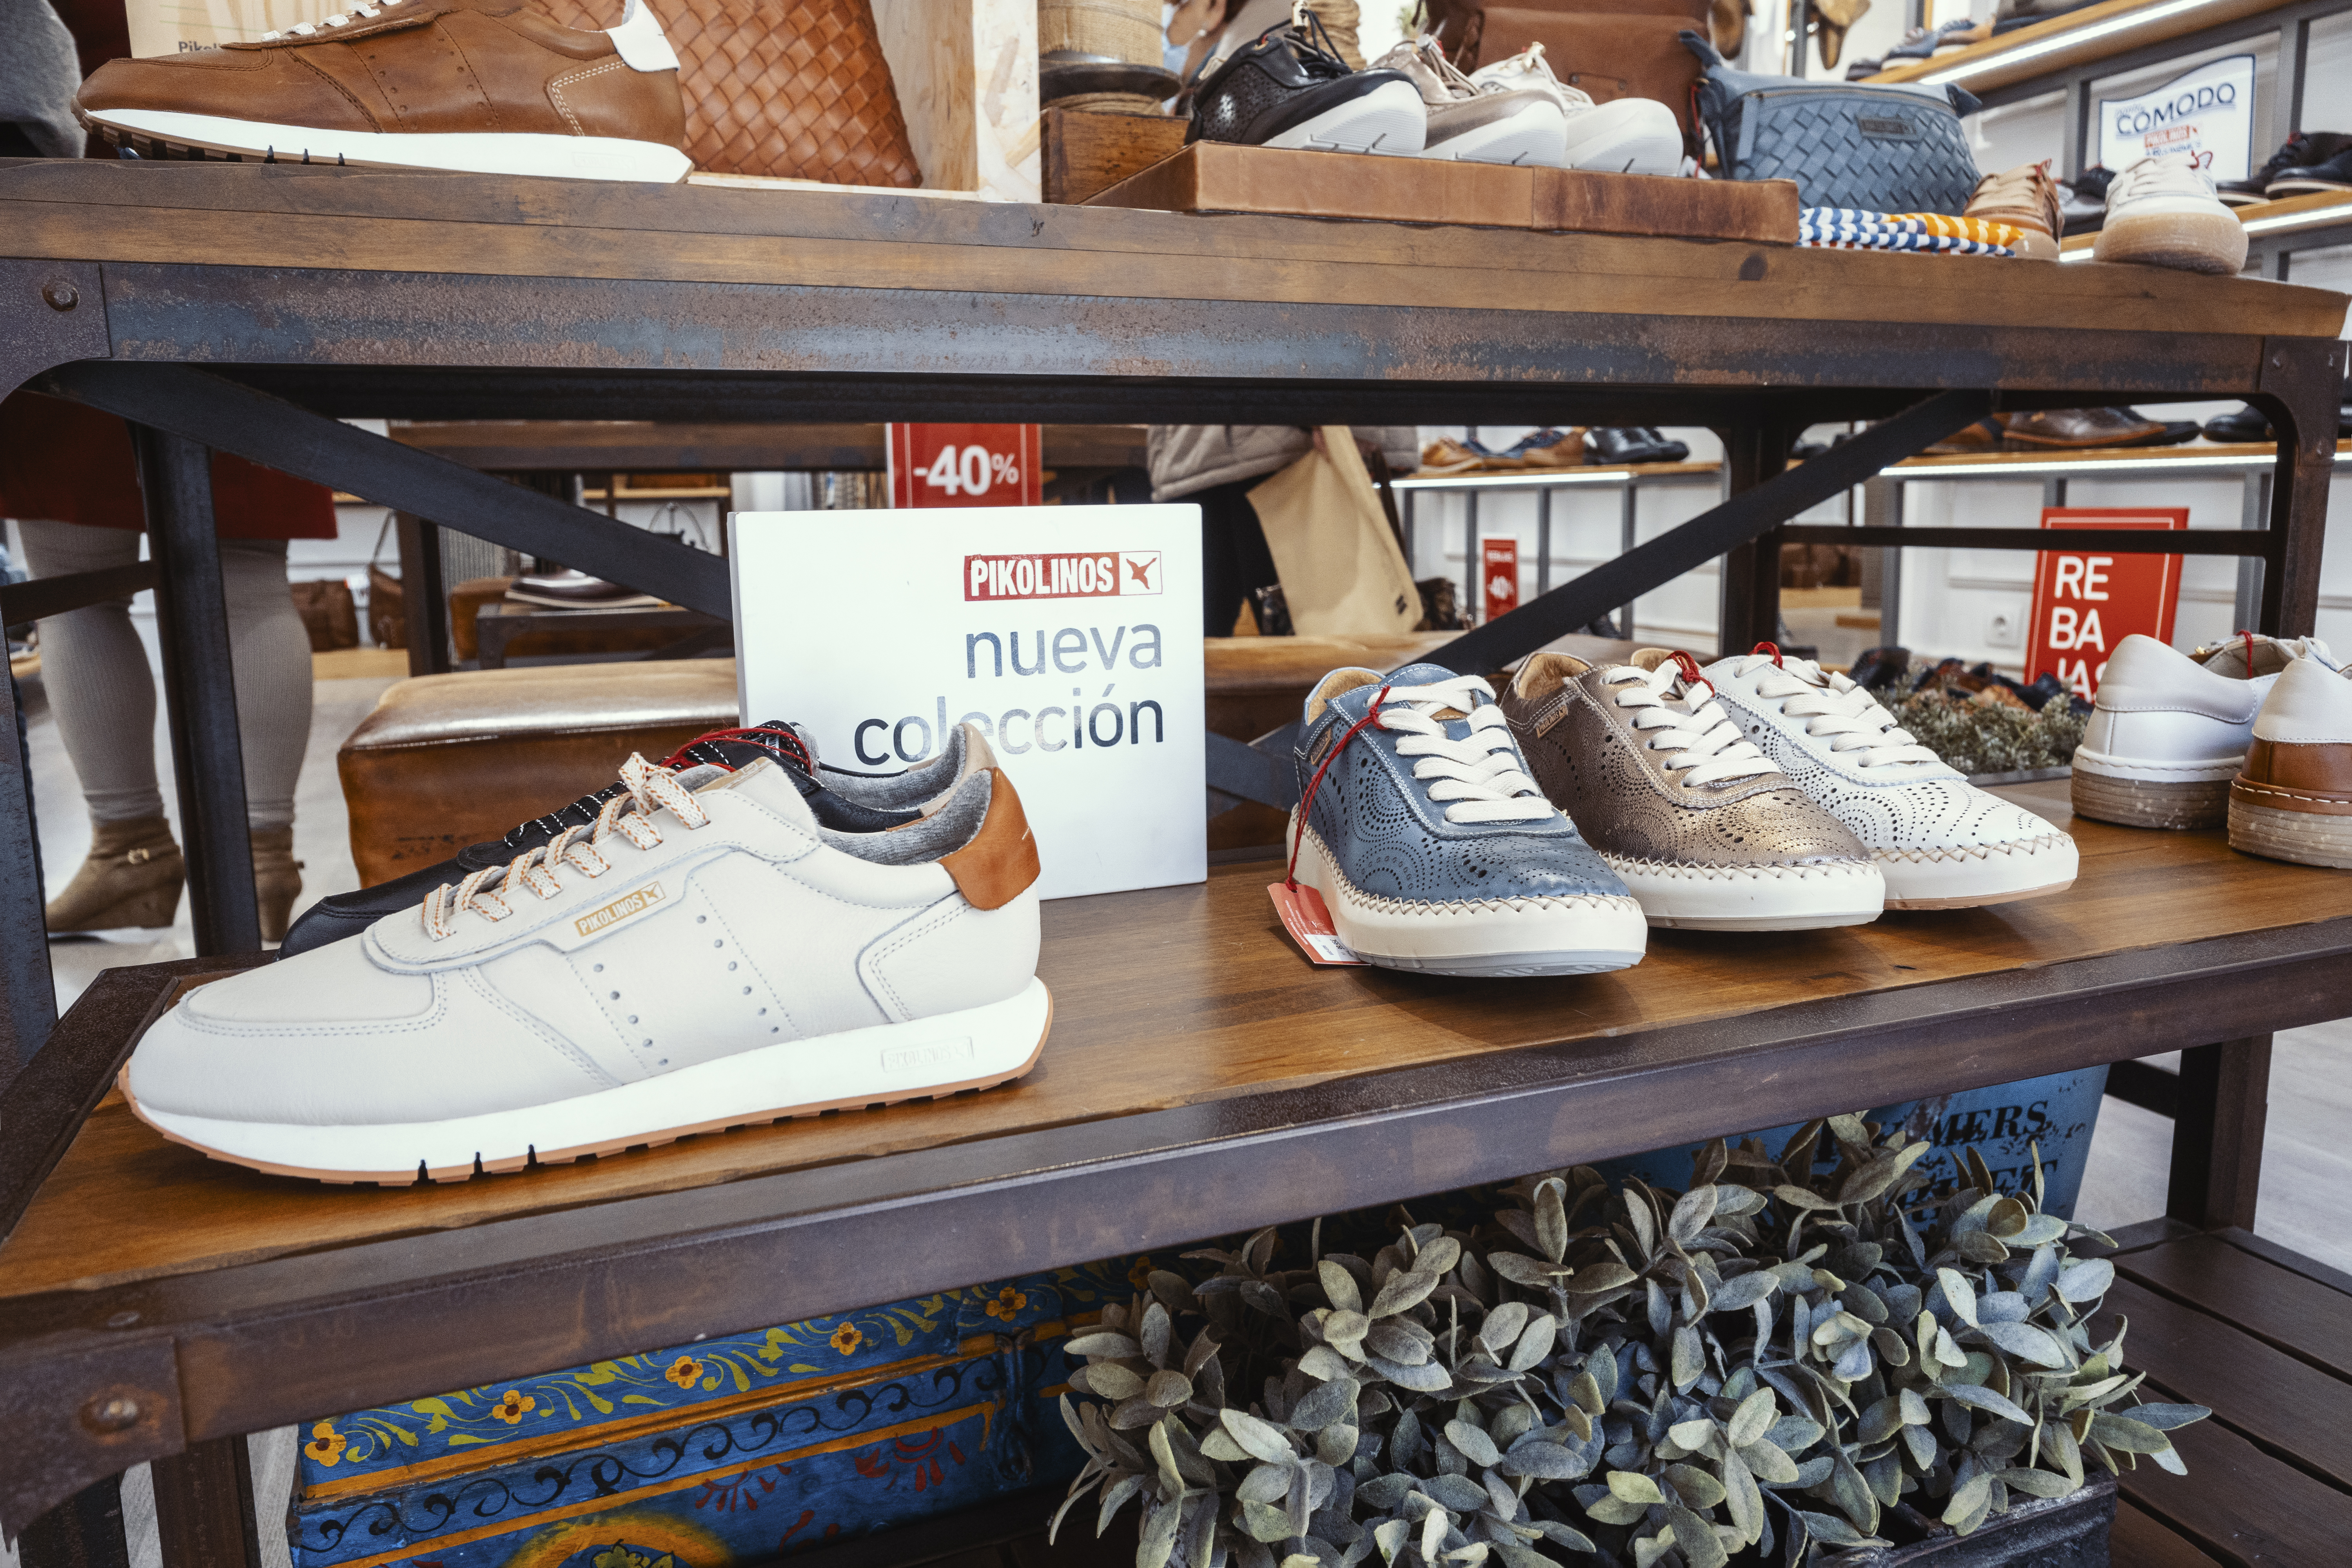 Imagen de zapatos de Pikolinos de la nueva colección en la tienda de Málaga